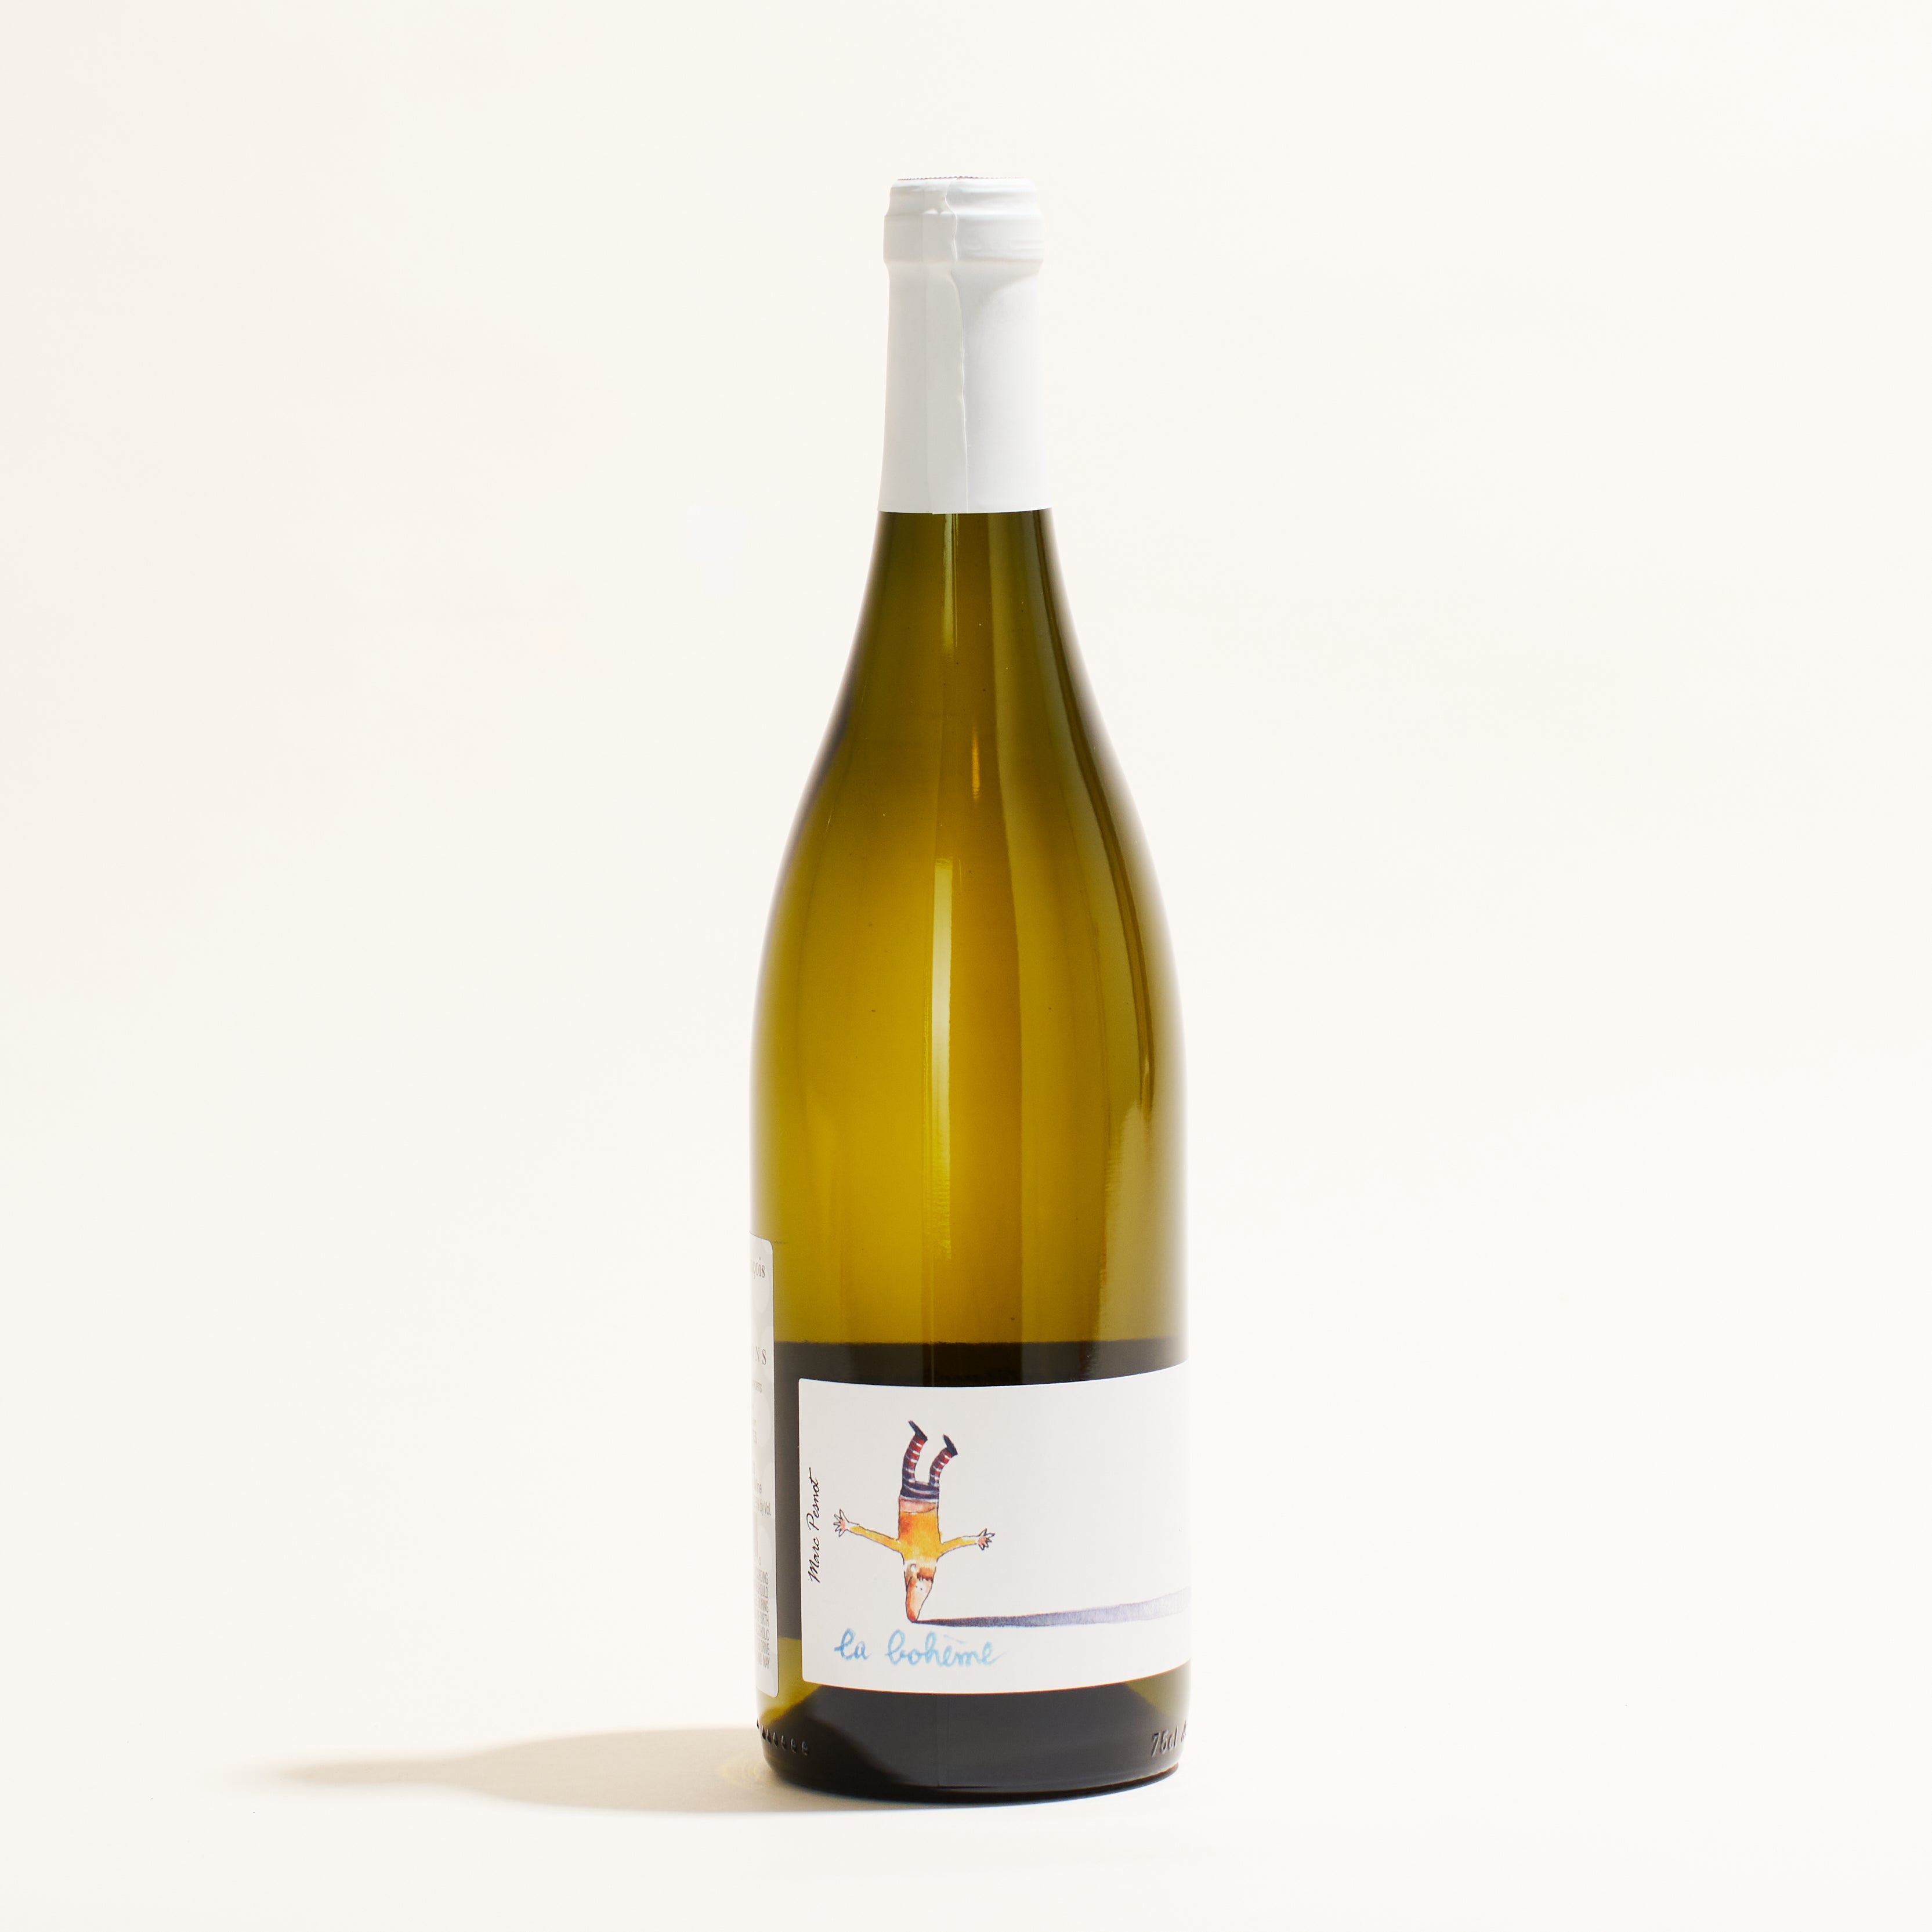 La Boheme Marc Pesnot natural white wine Loire Valley France front